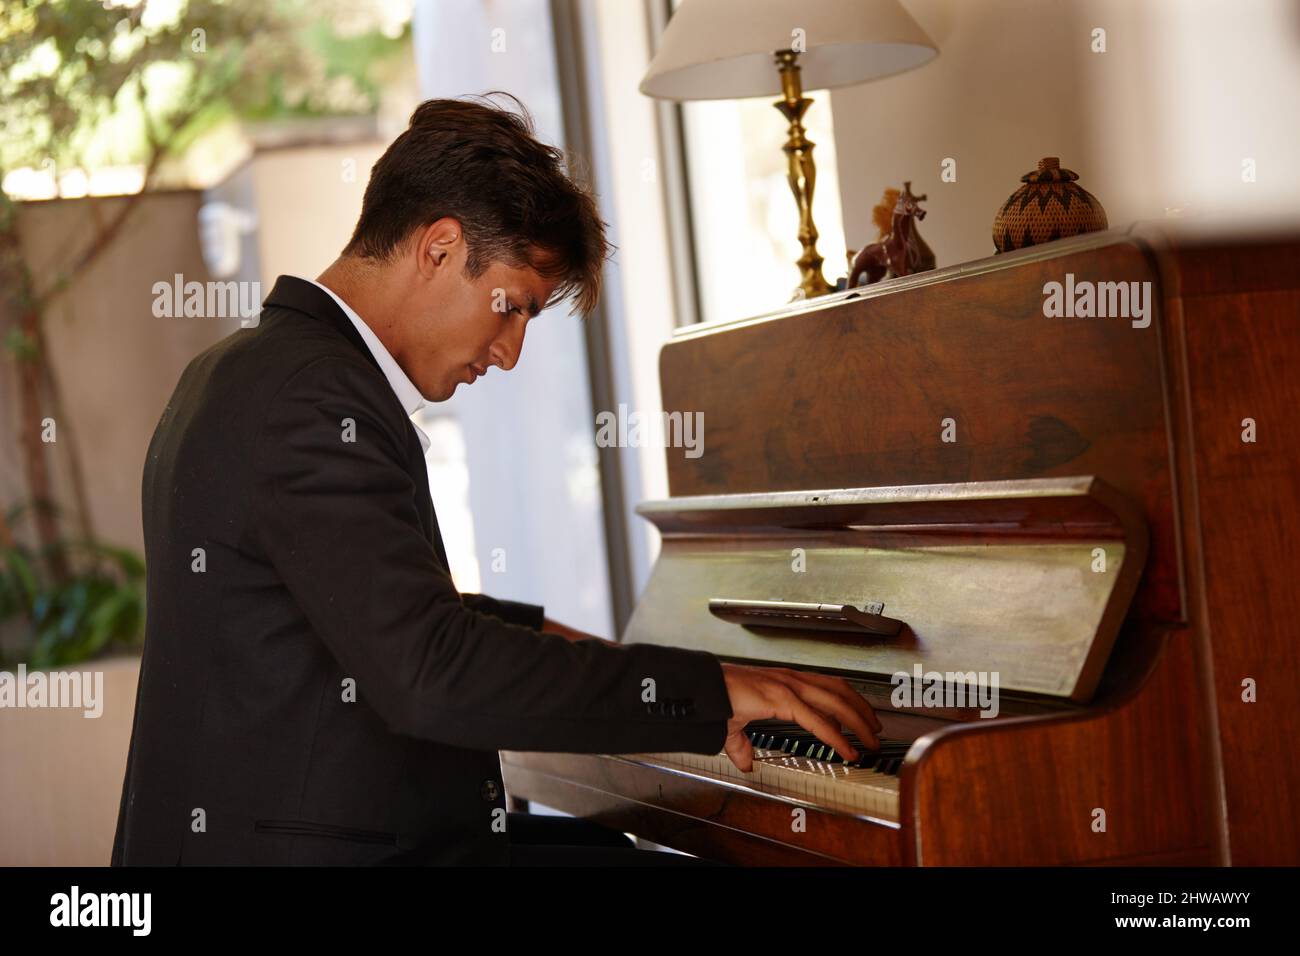 Perdendosi nella musica. Scatto di un bel giovane che suona il pianoforte a casa. Foto Stock